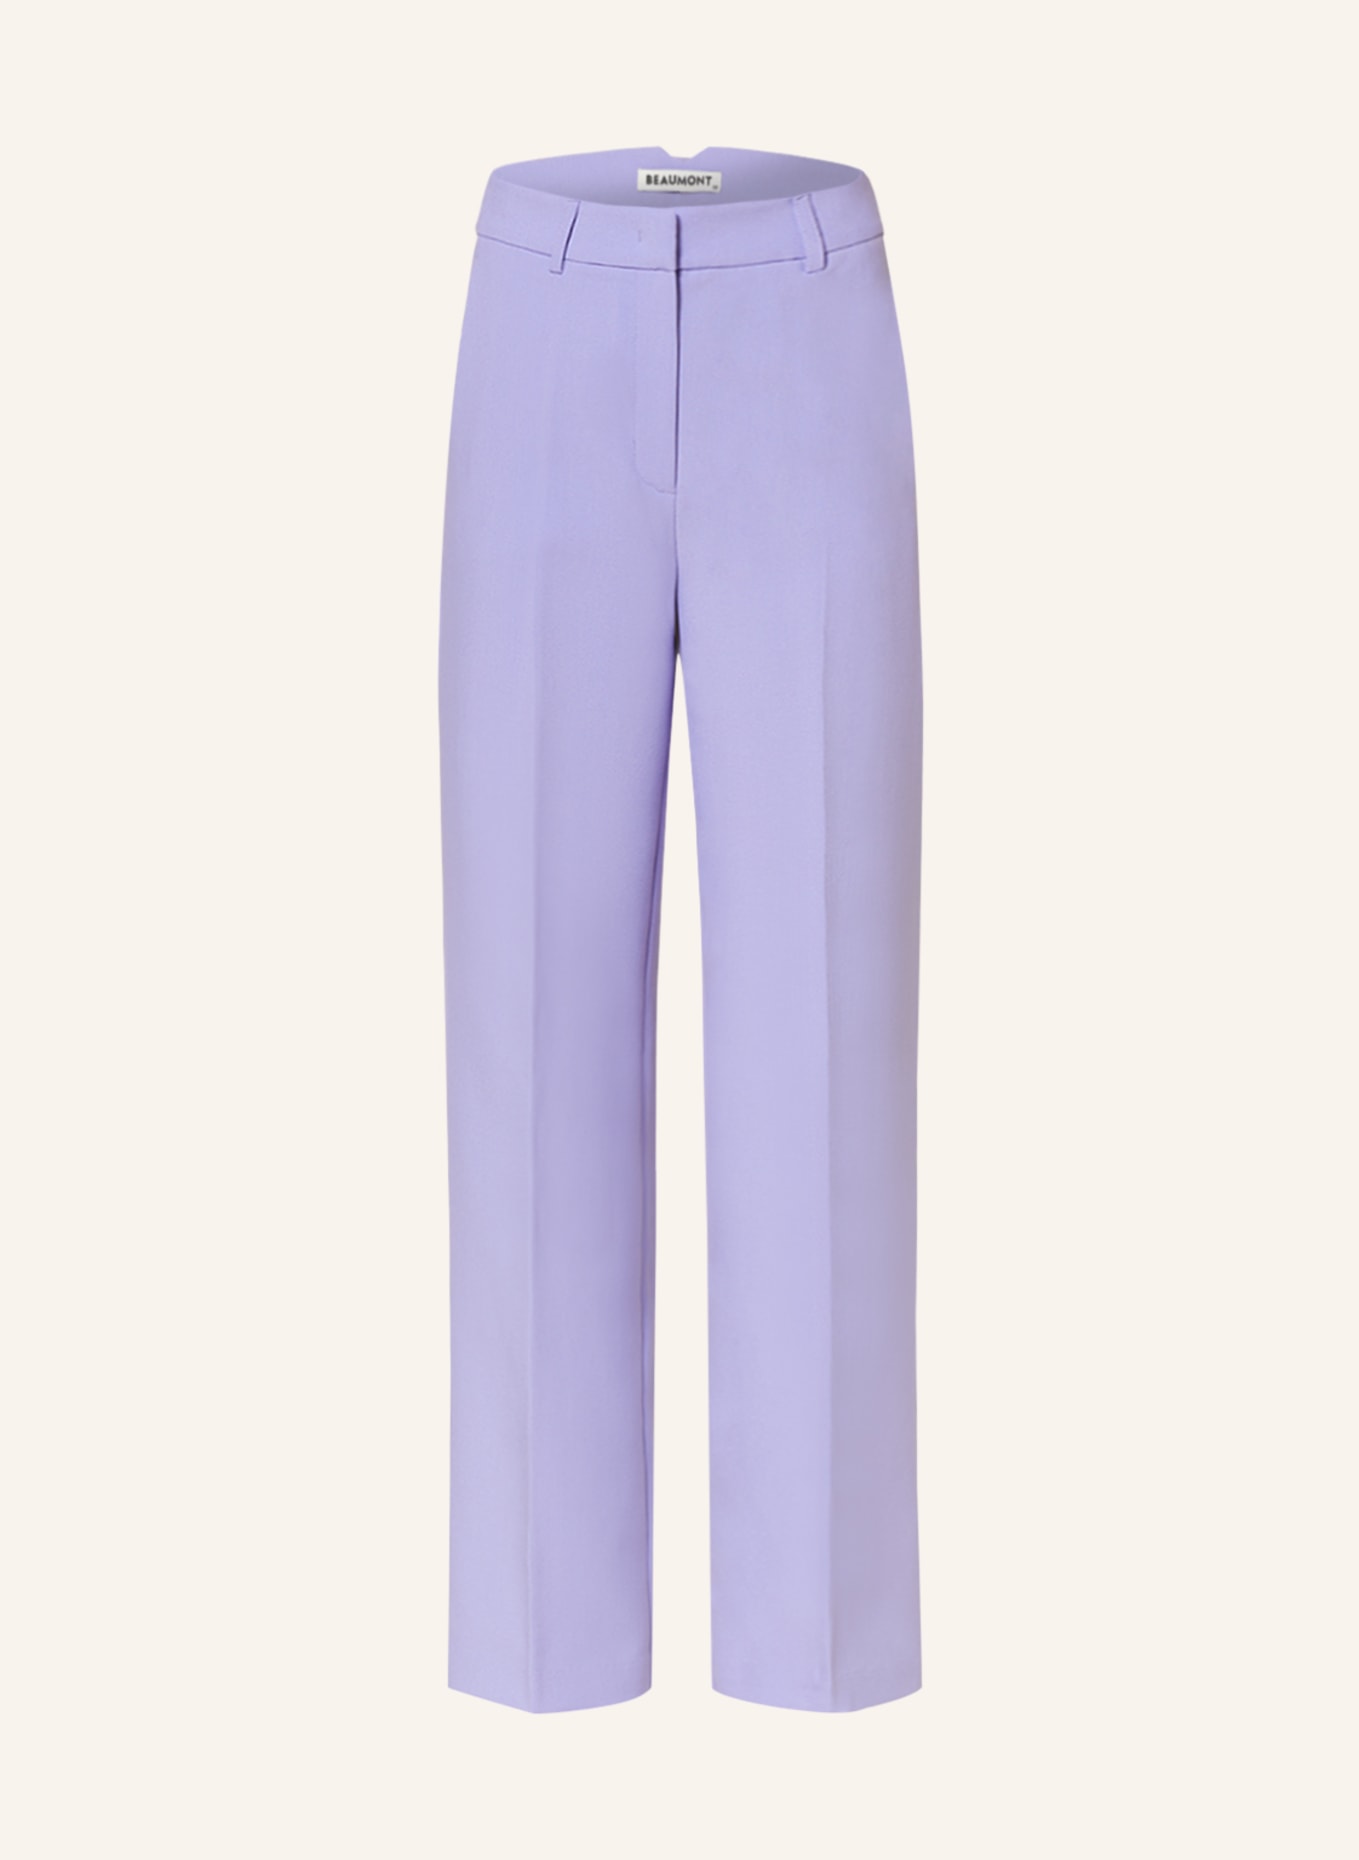 BEAUMONT Wide leg trousers JULES, Color: PURPLE (Image 1)